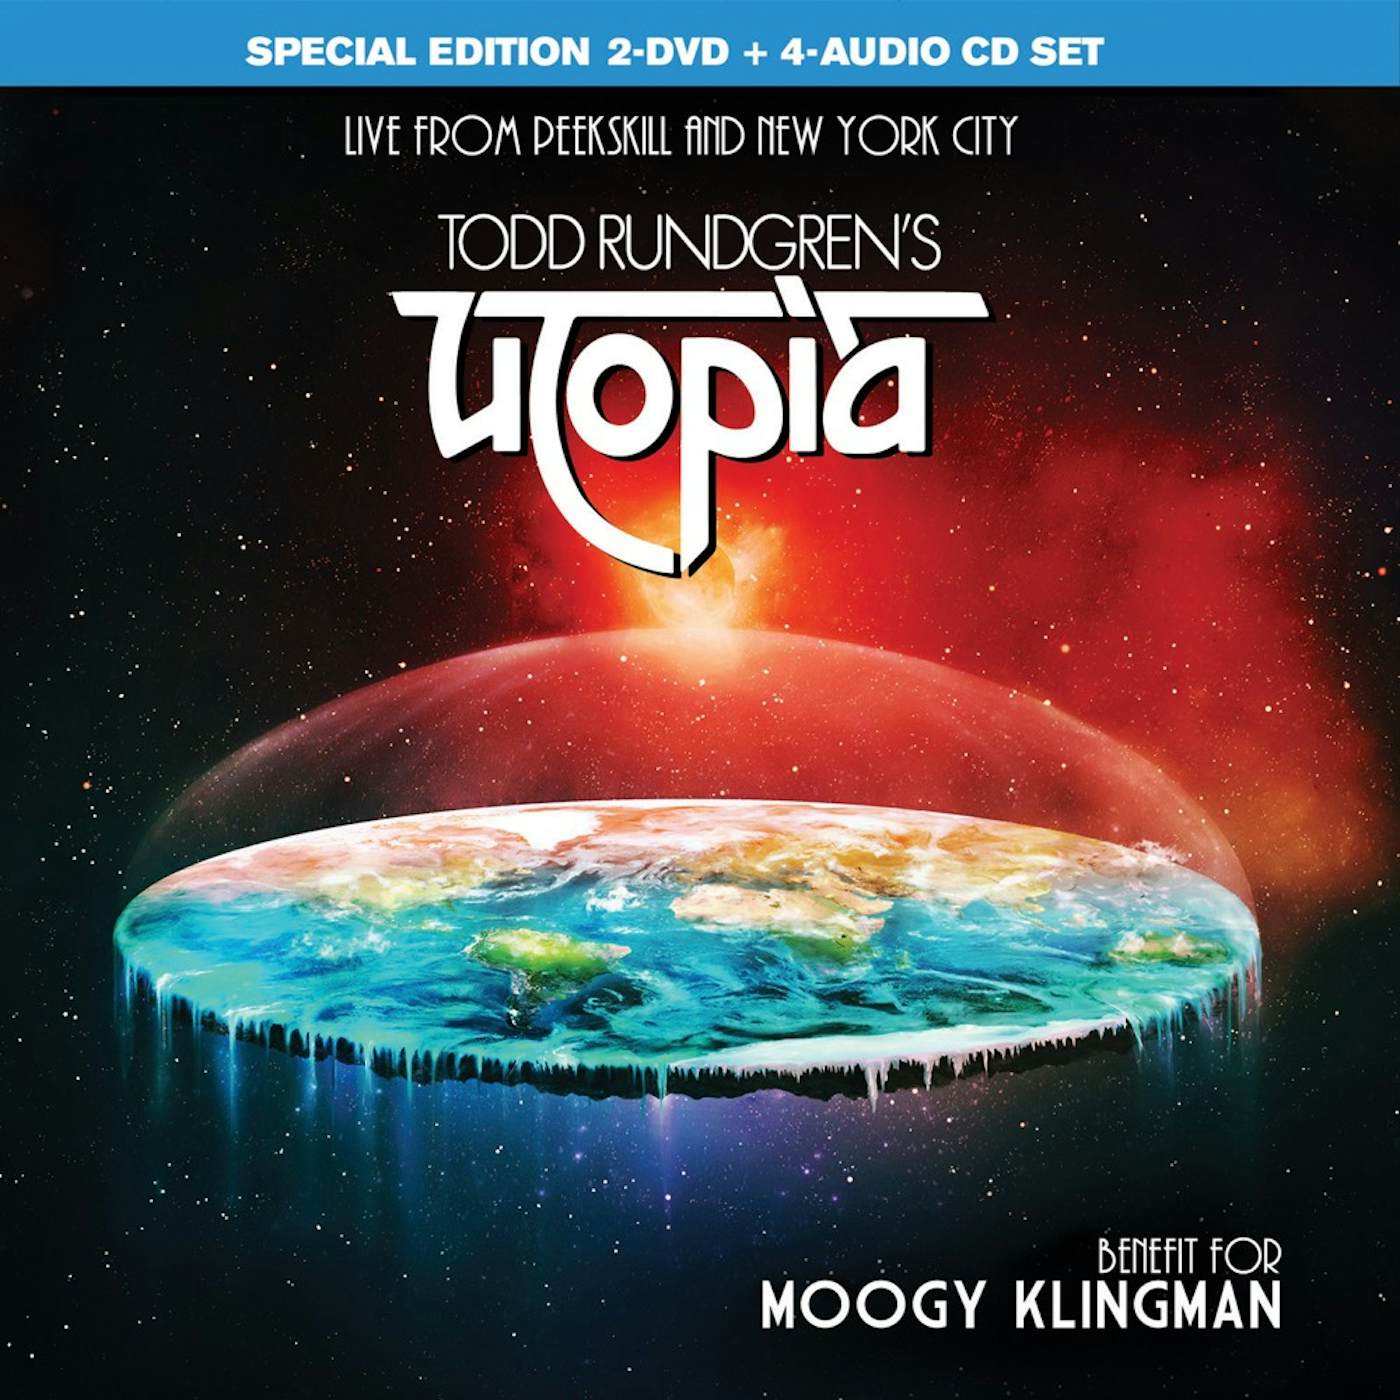 Todd Rundgren's Utopia BENEFIT FOR MOOGY KLINGMAN CD